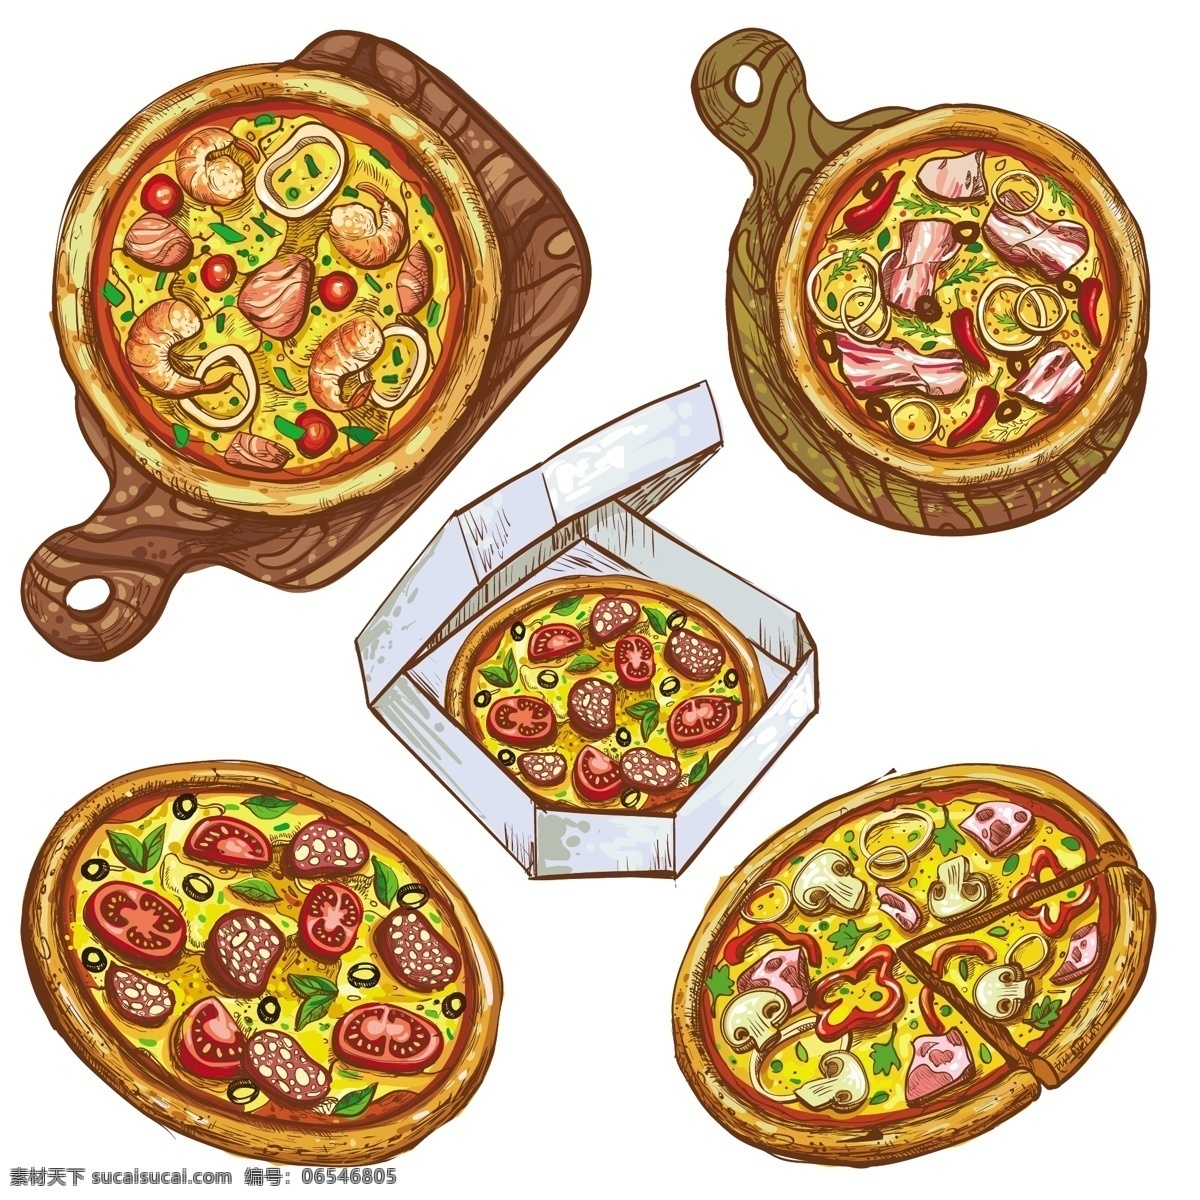 集 矢量 插图 整个 比萨 切片 木板 上 比萨饼 交付 一个 盒子 里 背景 图案 食物 古董 菜单 木材 图标 手 餐厅 手绘 颜色 交货 标志 板 木材背景 烹饪